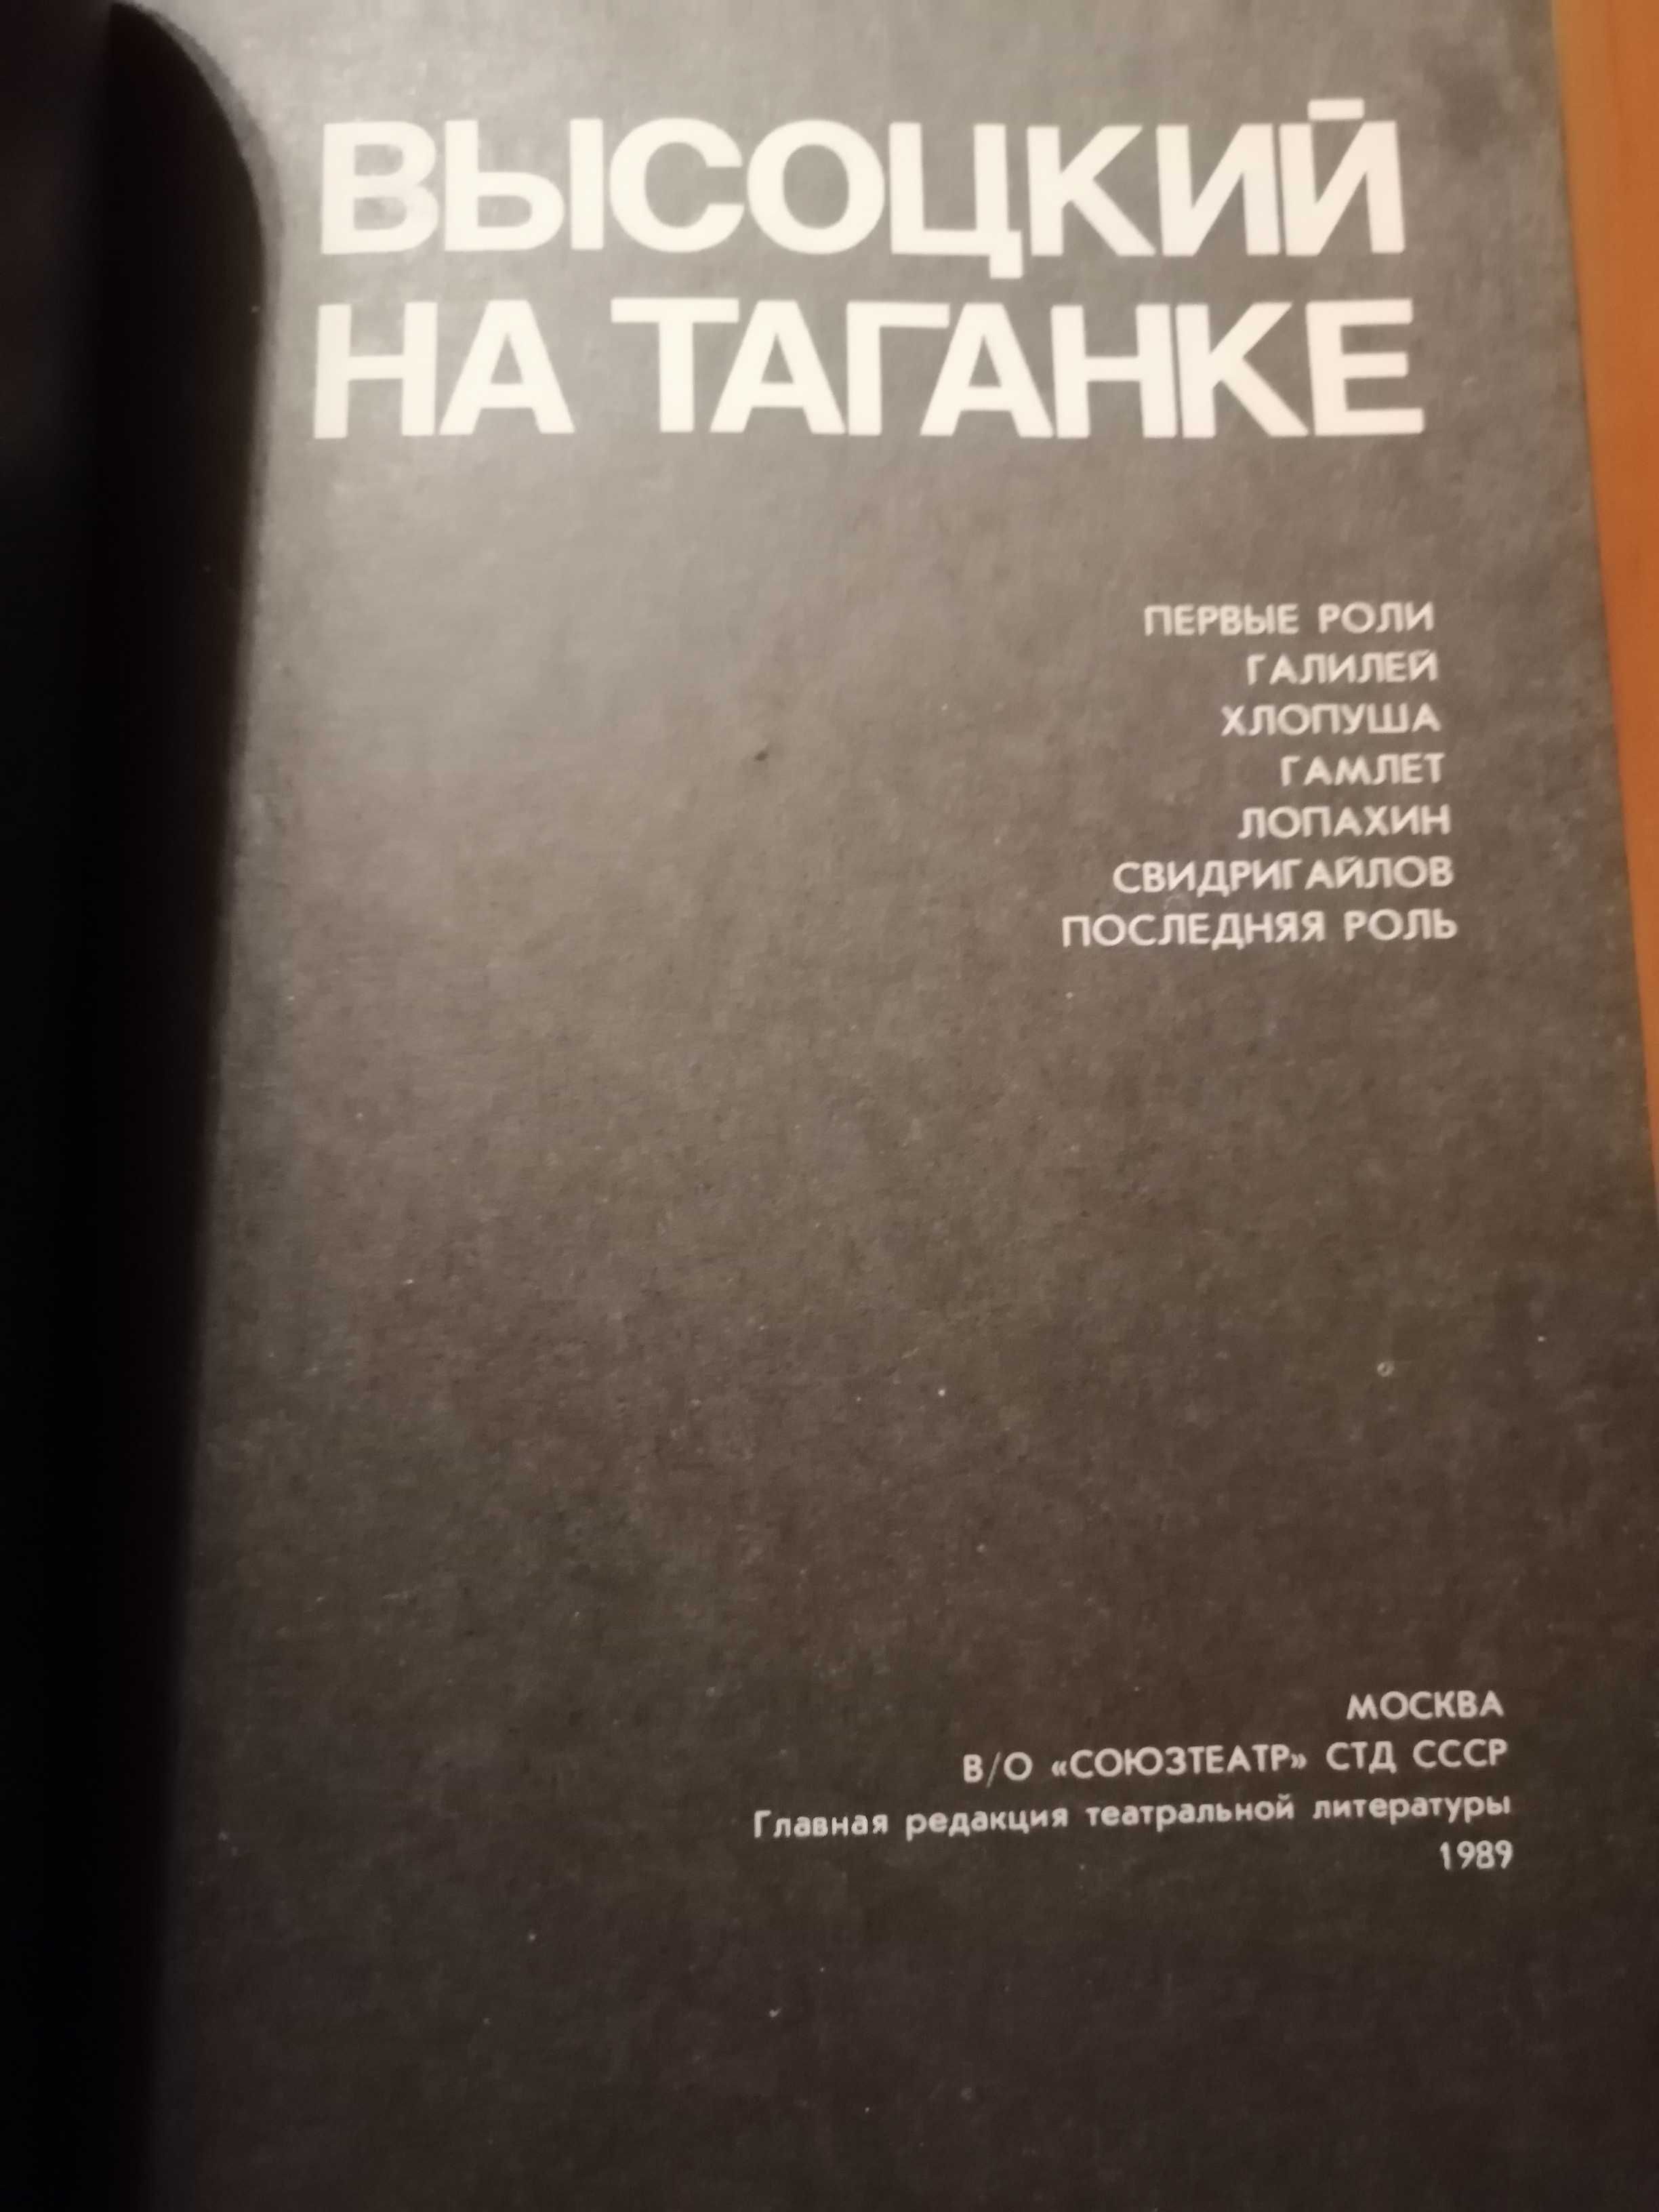 Продам книги" Высоцкий на Таганке" "Нерв" "Четыре четверти пути" и др